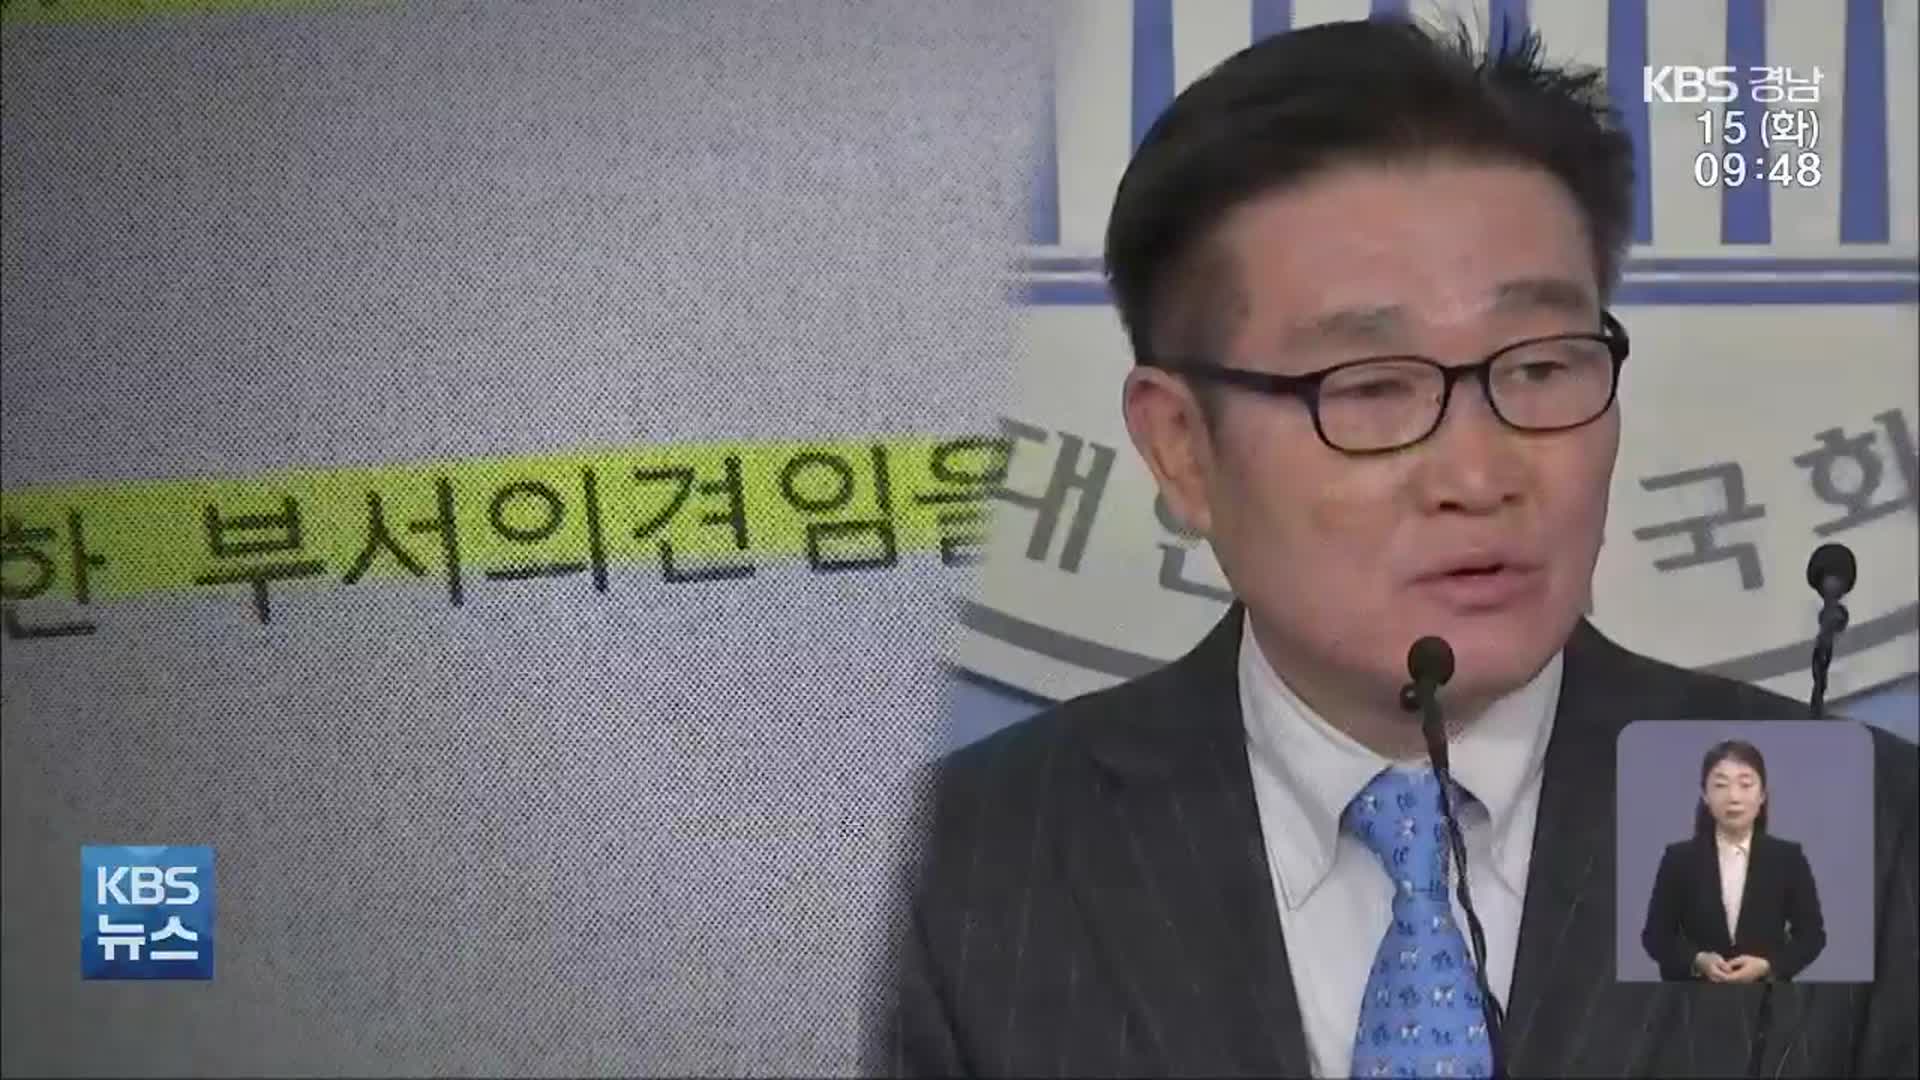 김일권 시장 친인척 업체 줄줄이 계약?…권익위 “행동강령 위반”